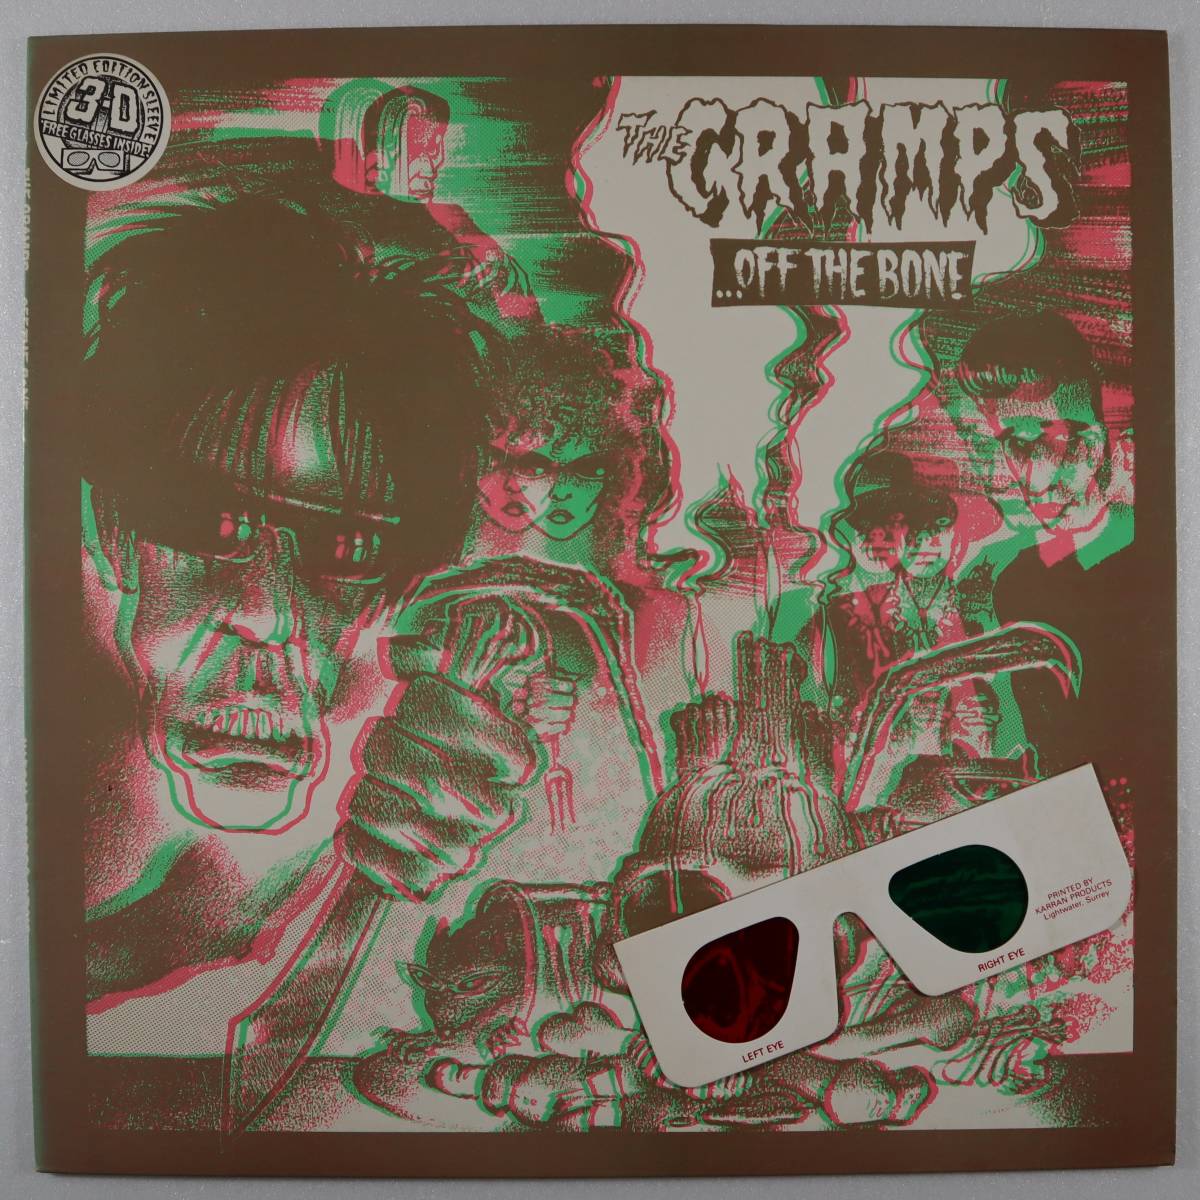 英Orig * CRAMPS - Off the bone * 1983年 UK Illegal ILP012 ガレージ・パンク・サイコビリー・ホラーPUNK 3Dカバー+専用眼鏡 準美品!!_画像1